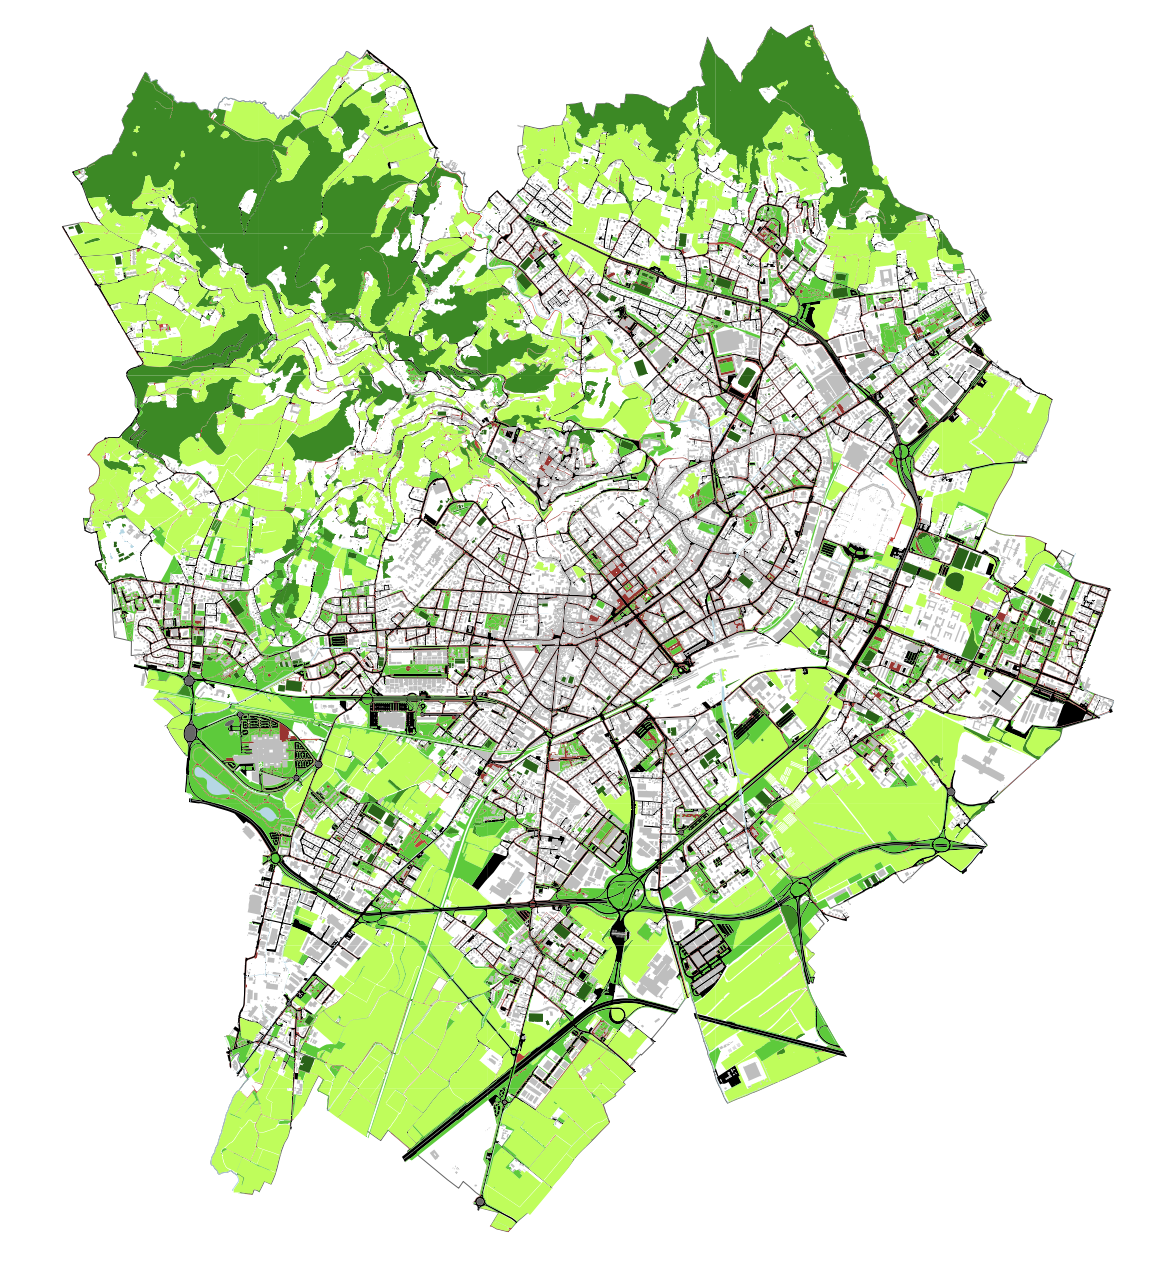 Mobilità e spazio pubblico a Bergamo: un’analisi cartografica